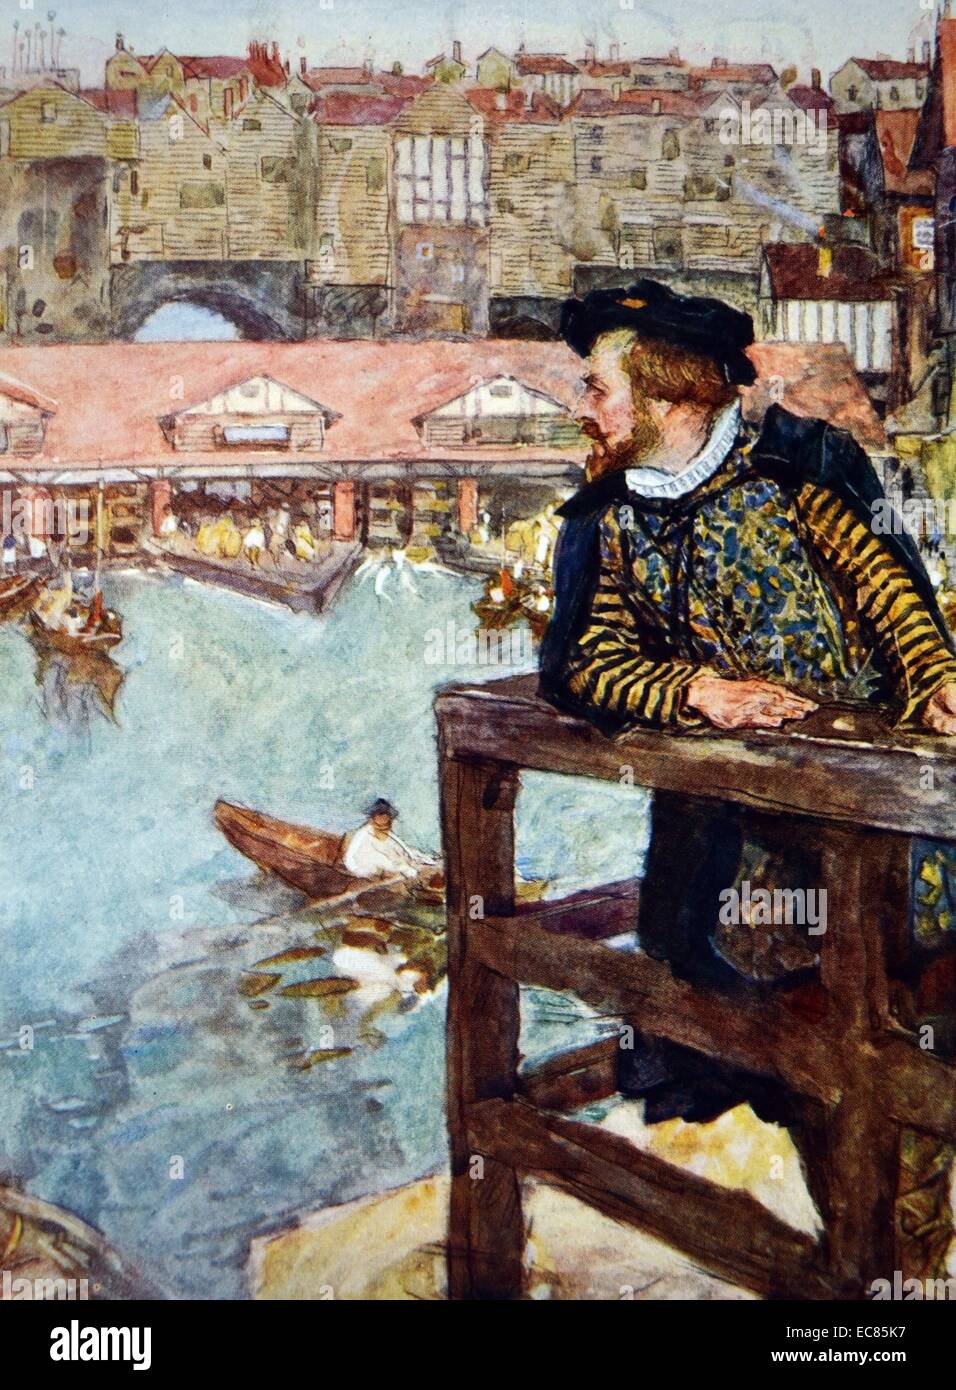 La pittura di William Shakespeare (1564-1616) poeta inglese, drammaturgo e attore, presso i mulini ad acqua sotto il ponte di Londra. Datata xvi secolo Foto Stock